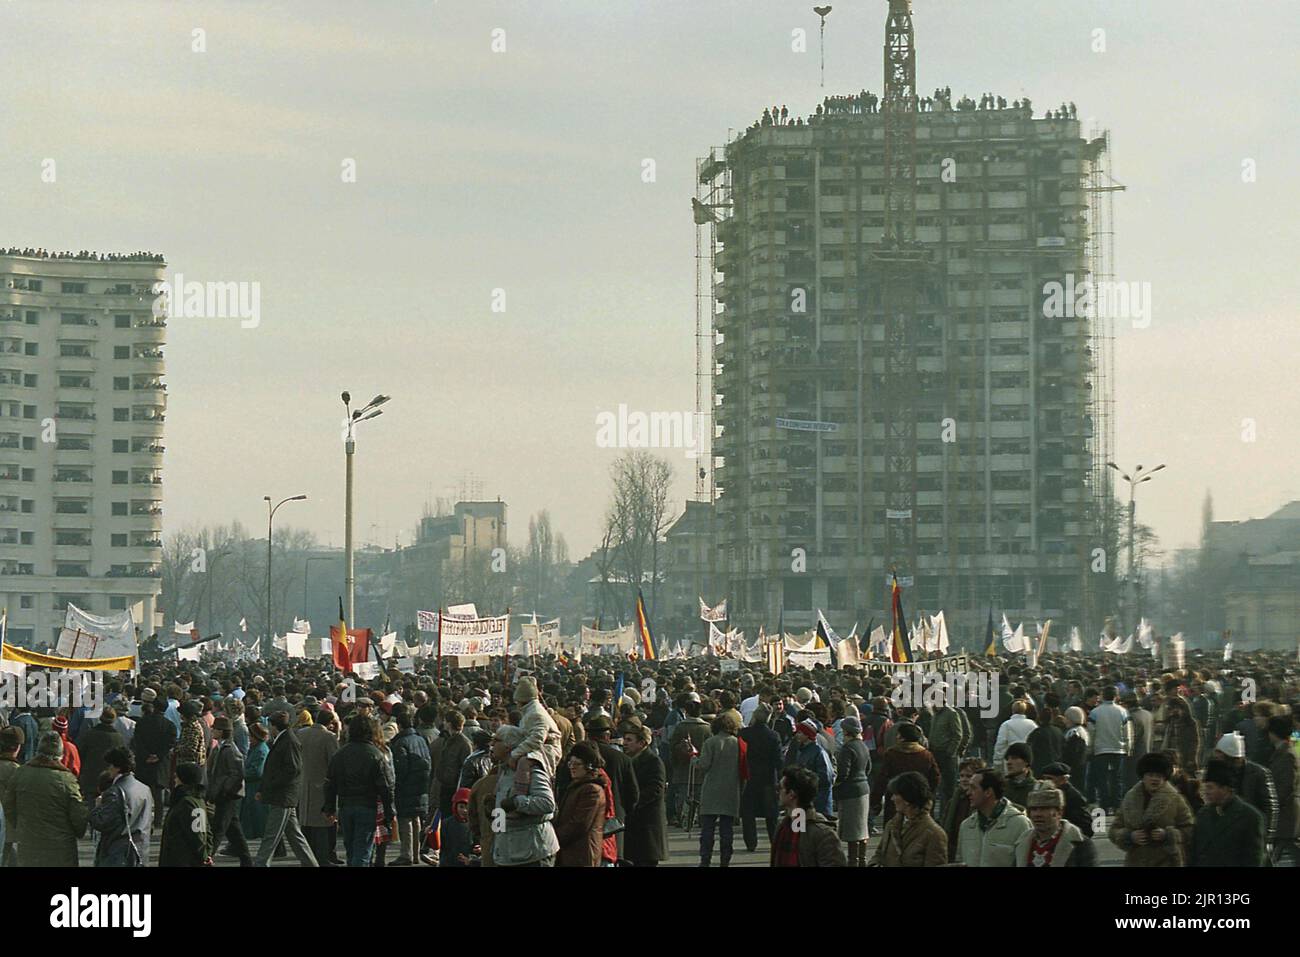 Bukarest, Rumänien, 28. Januar 1990. Einen Monat nach der antikommunistischen Revolution protestieren Anhänger der historischen (rechten) Parteien gegen das neue politische System, das sich hauptsächlich aus ehemaligen kommunistischen Beamten zusammensetzt. Der Protest begann auf dem Piata Victoriei (Siegesplatz), vor dem Siegespalast, der zum Hauptquartier der neuen Partei an der Macht wurde, F.S.N. Stockfoto